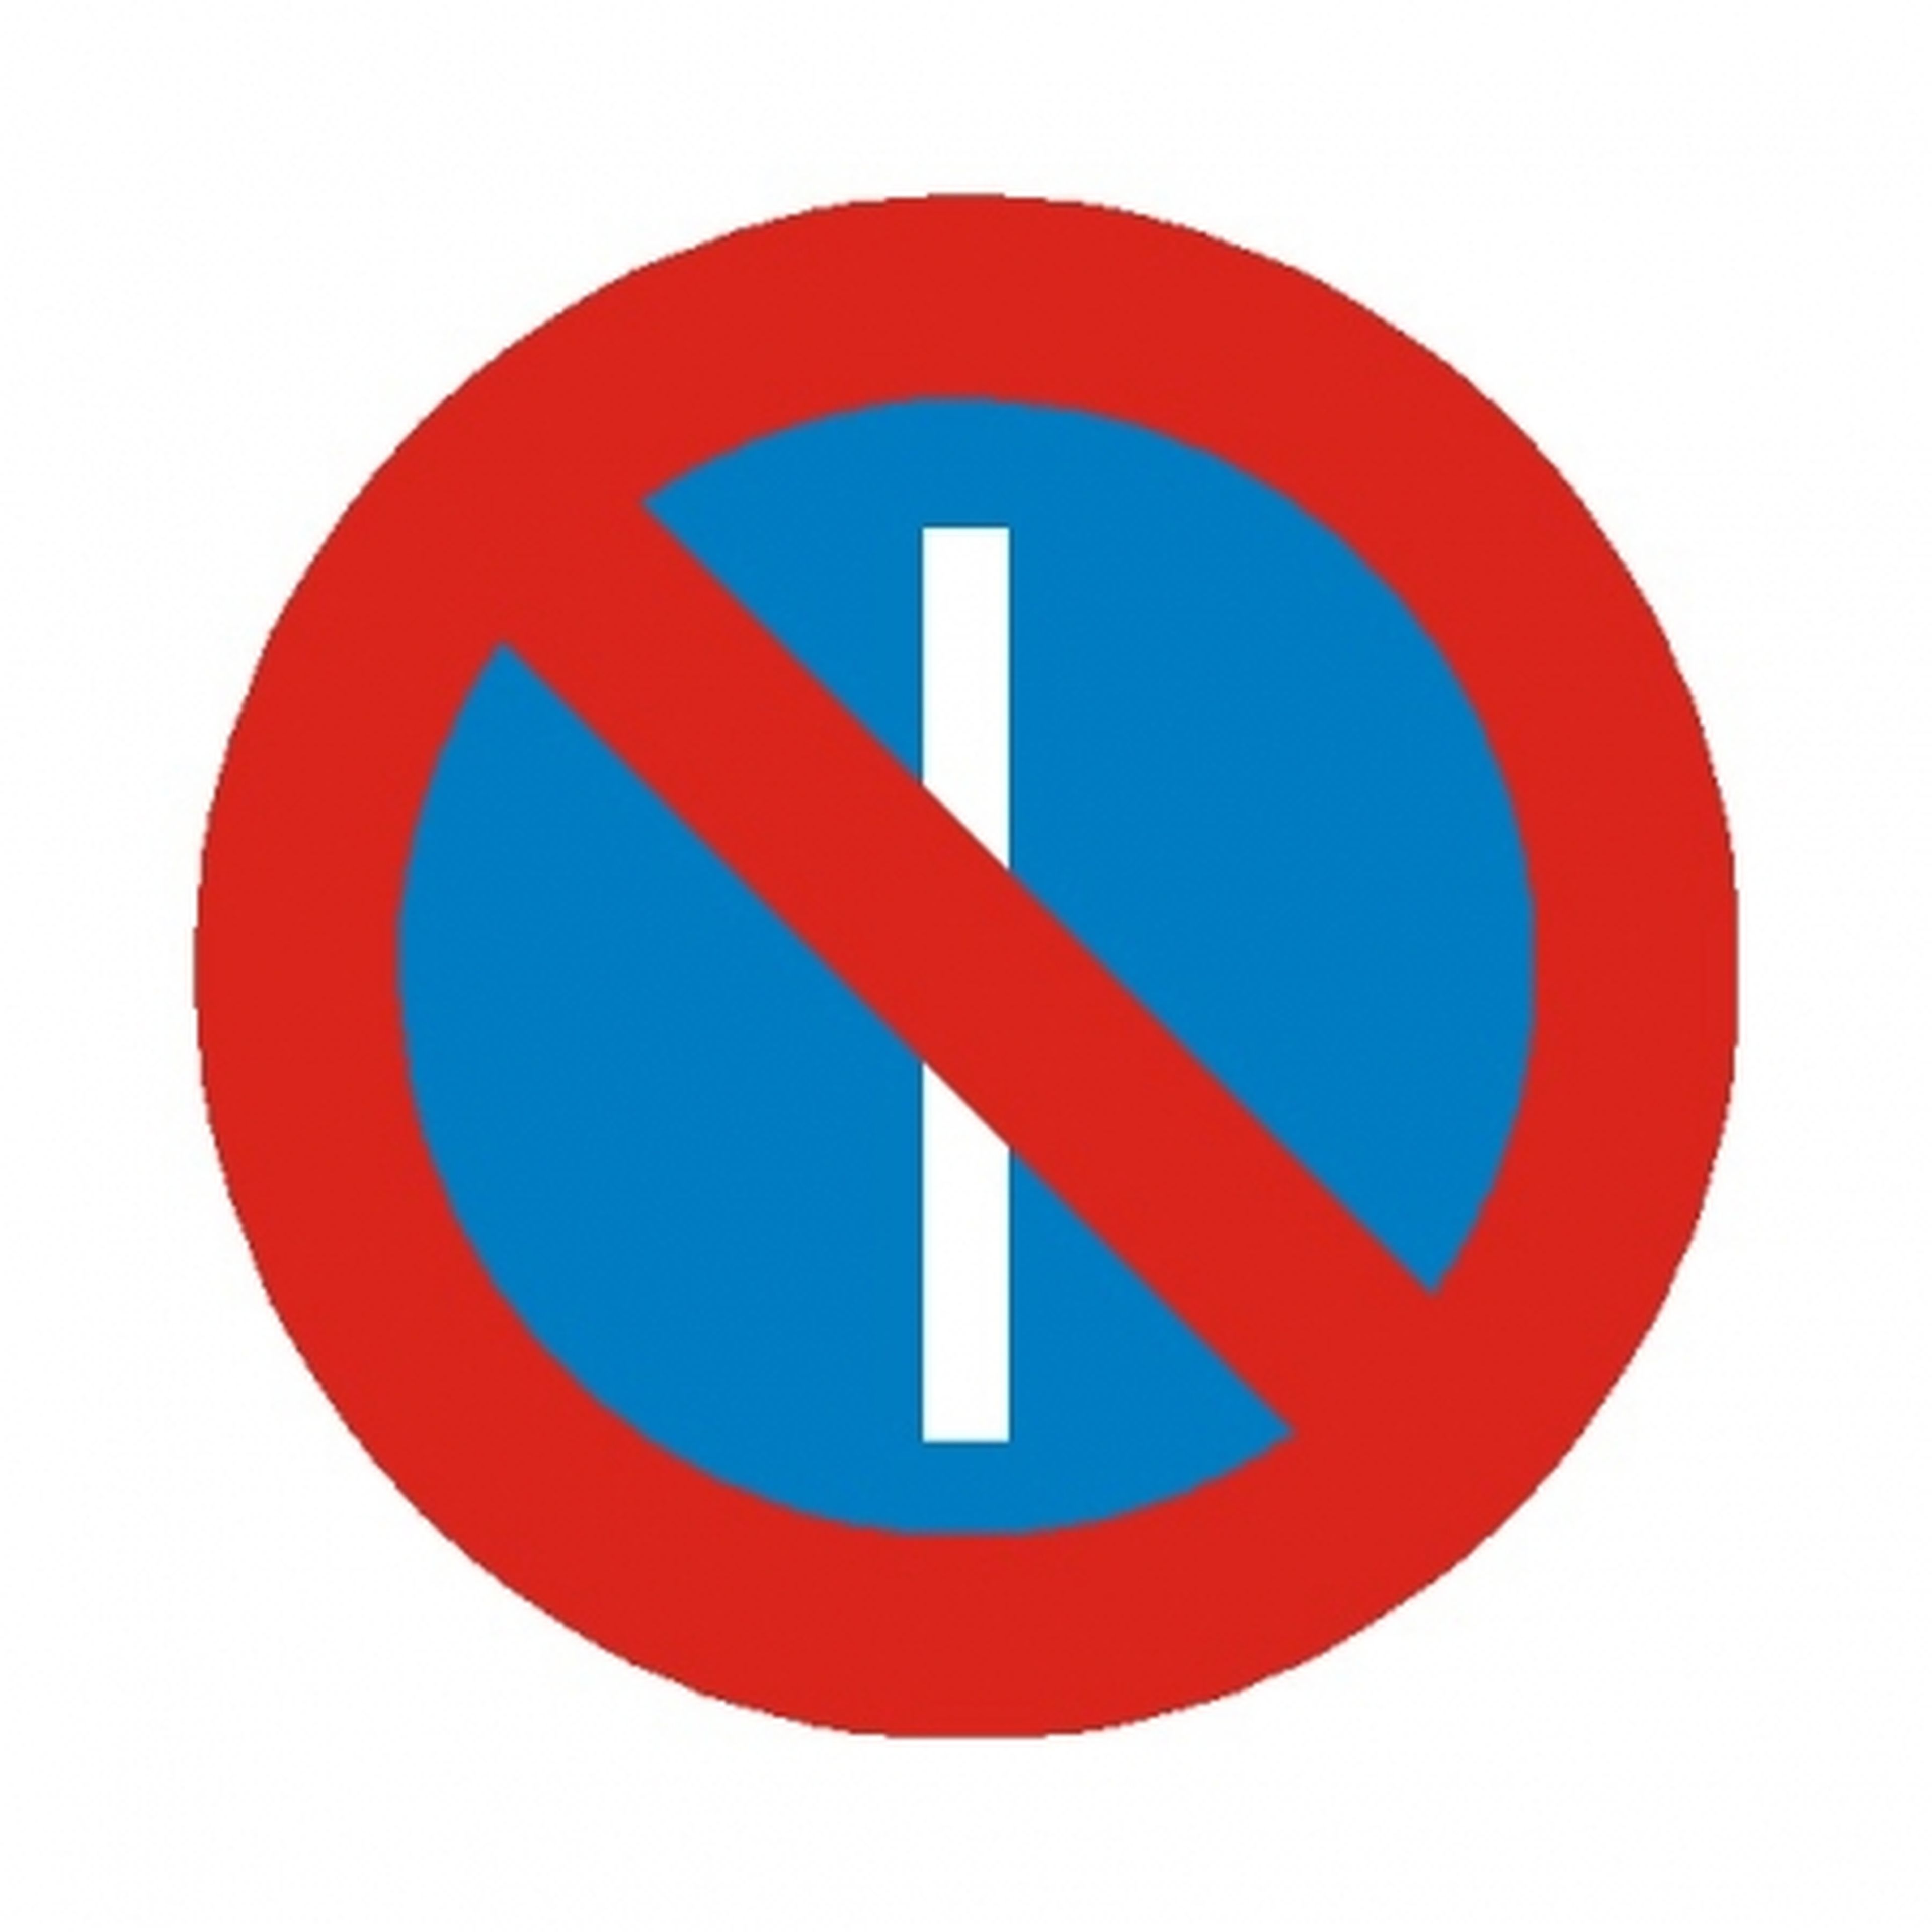 Señal de tráfico: Estacionamiento prohibido en días impares